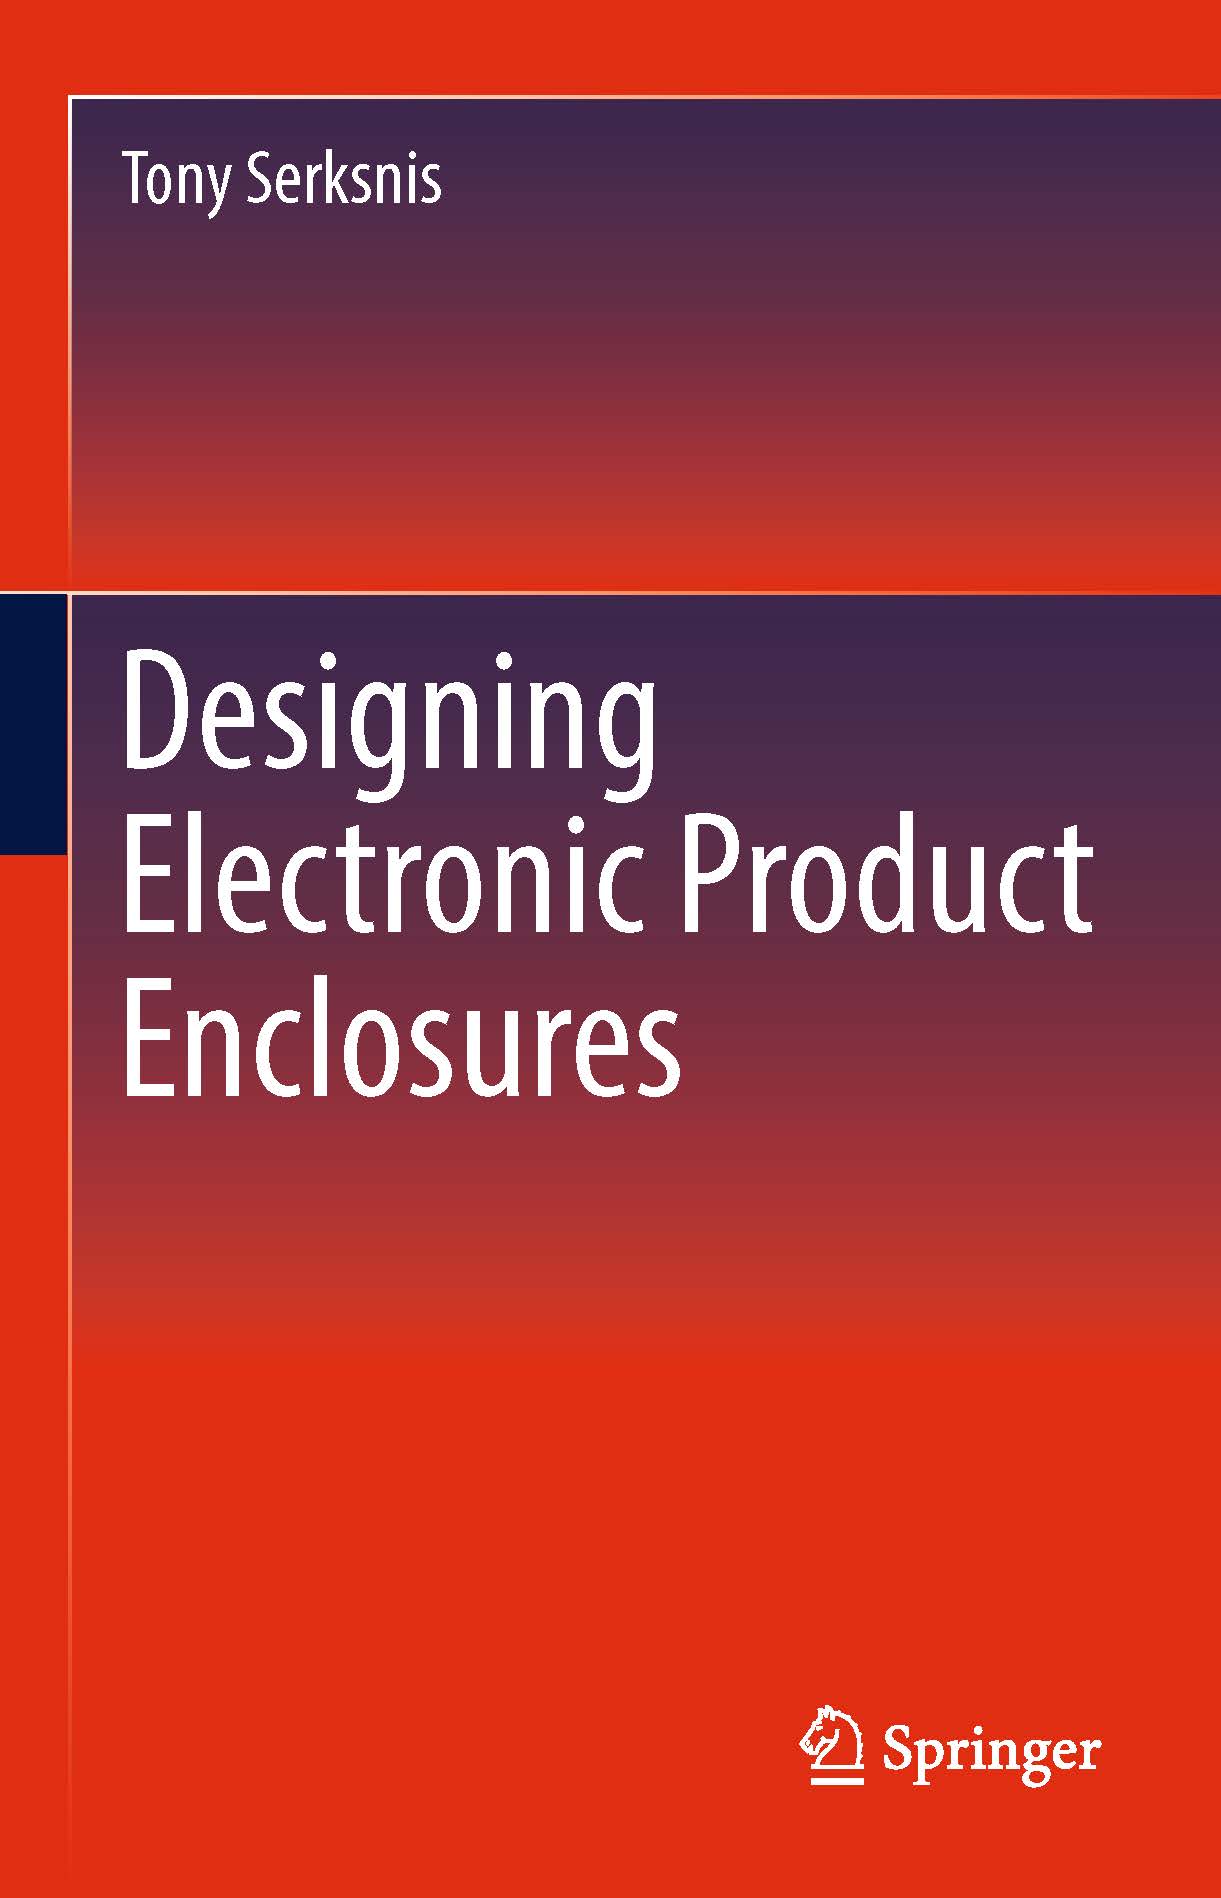 页面提取自－2019_Book_Designing Electronic Product Enclosures.jpg